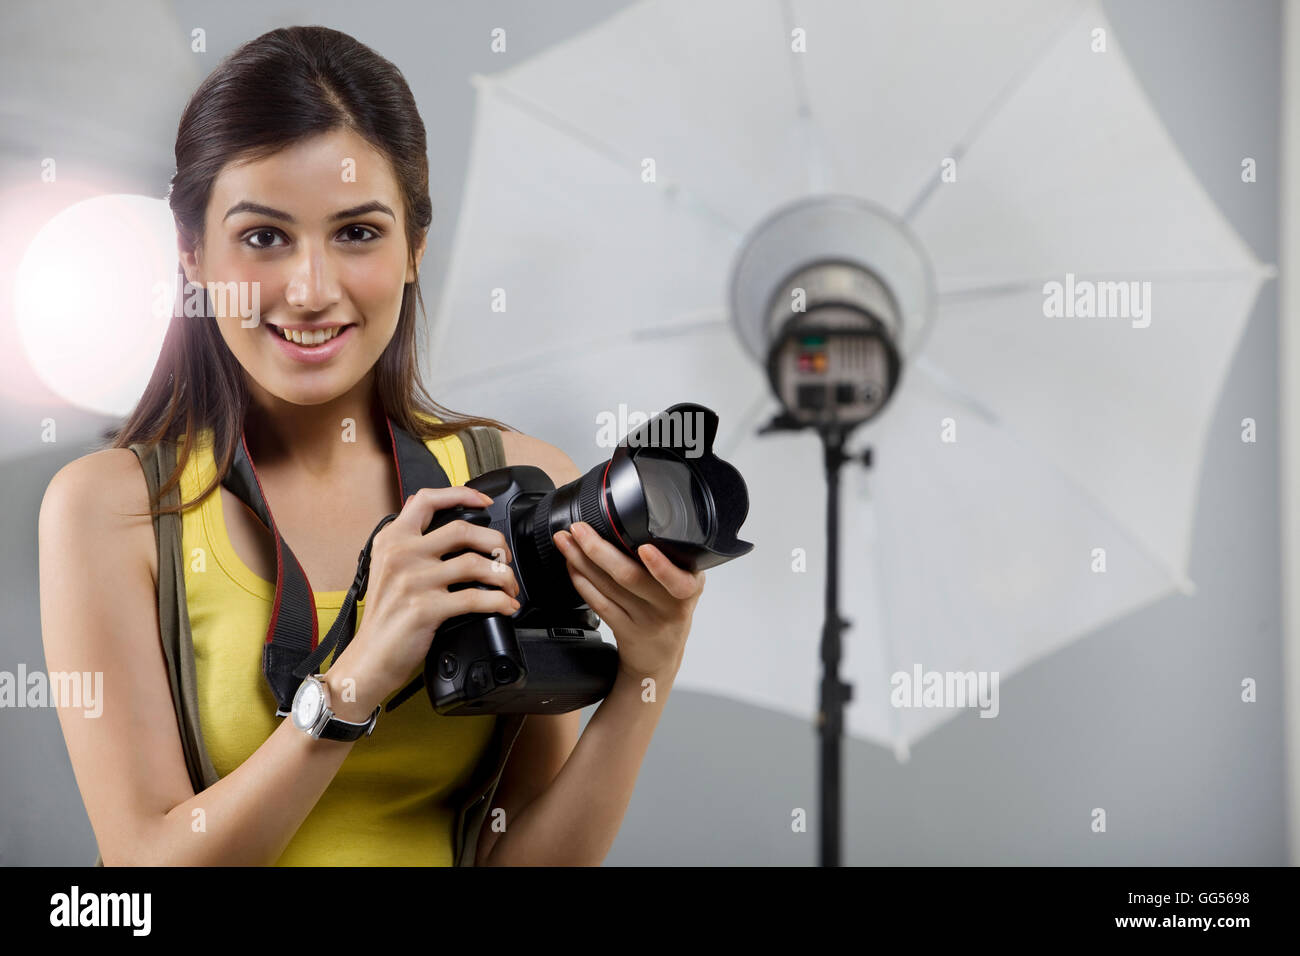 Ritratto di giovane donna fotografo con fotocamera digitale in studio Foto Stock